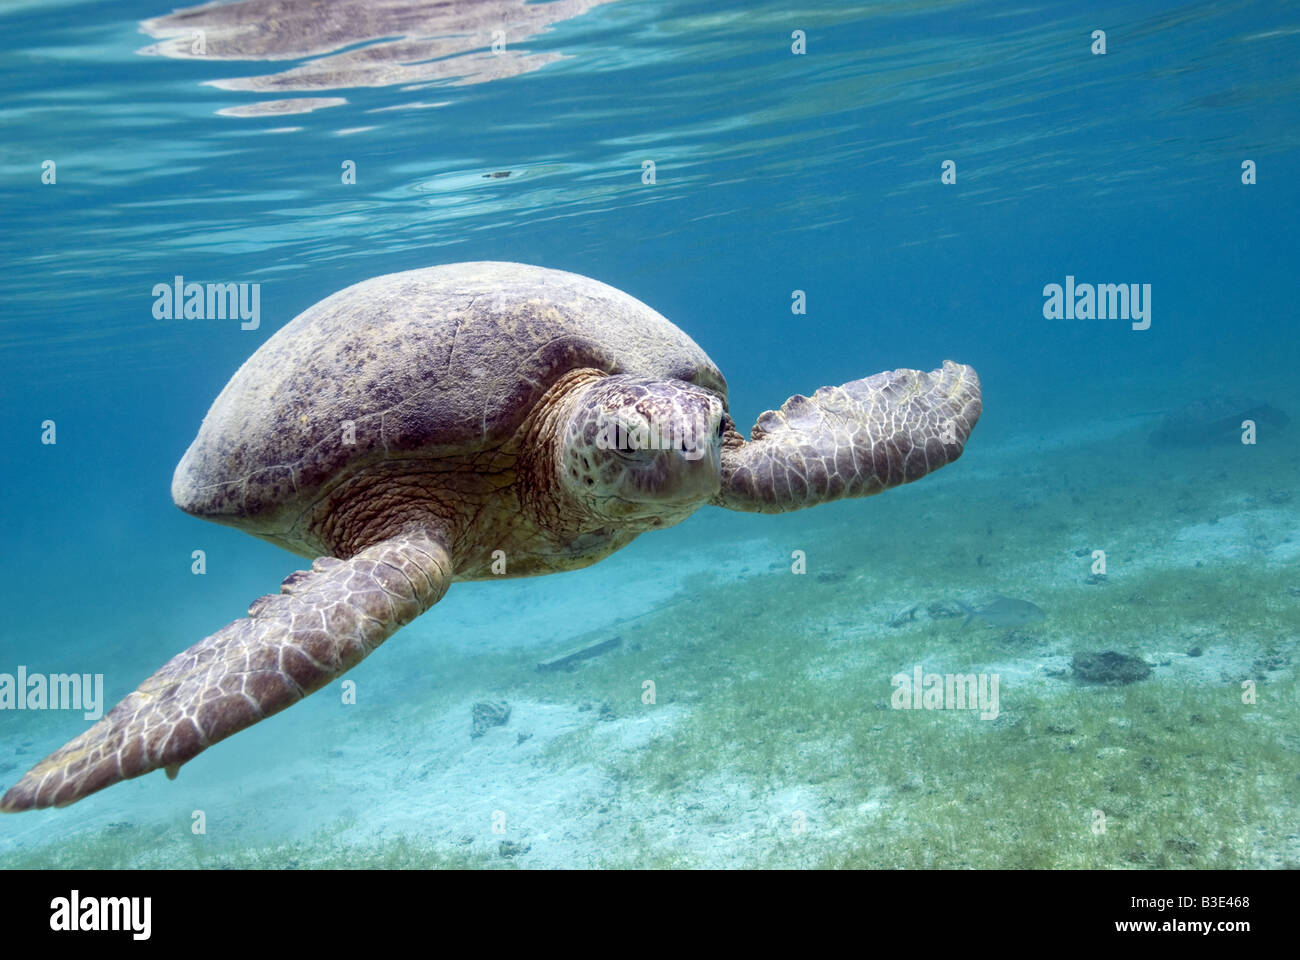 La tortuga verde nadando a lo largo de la parte inferior de zosteras bajo el agua. Foto de stock